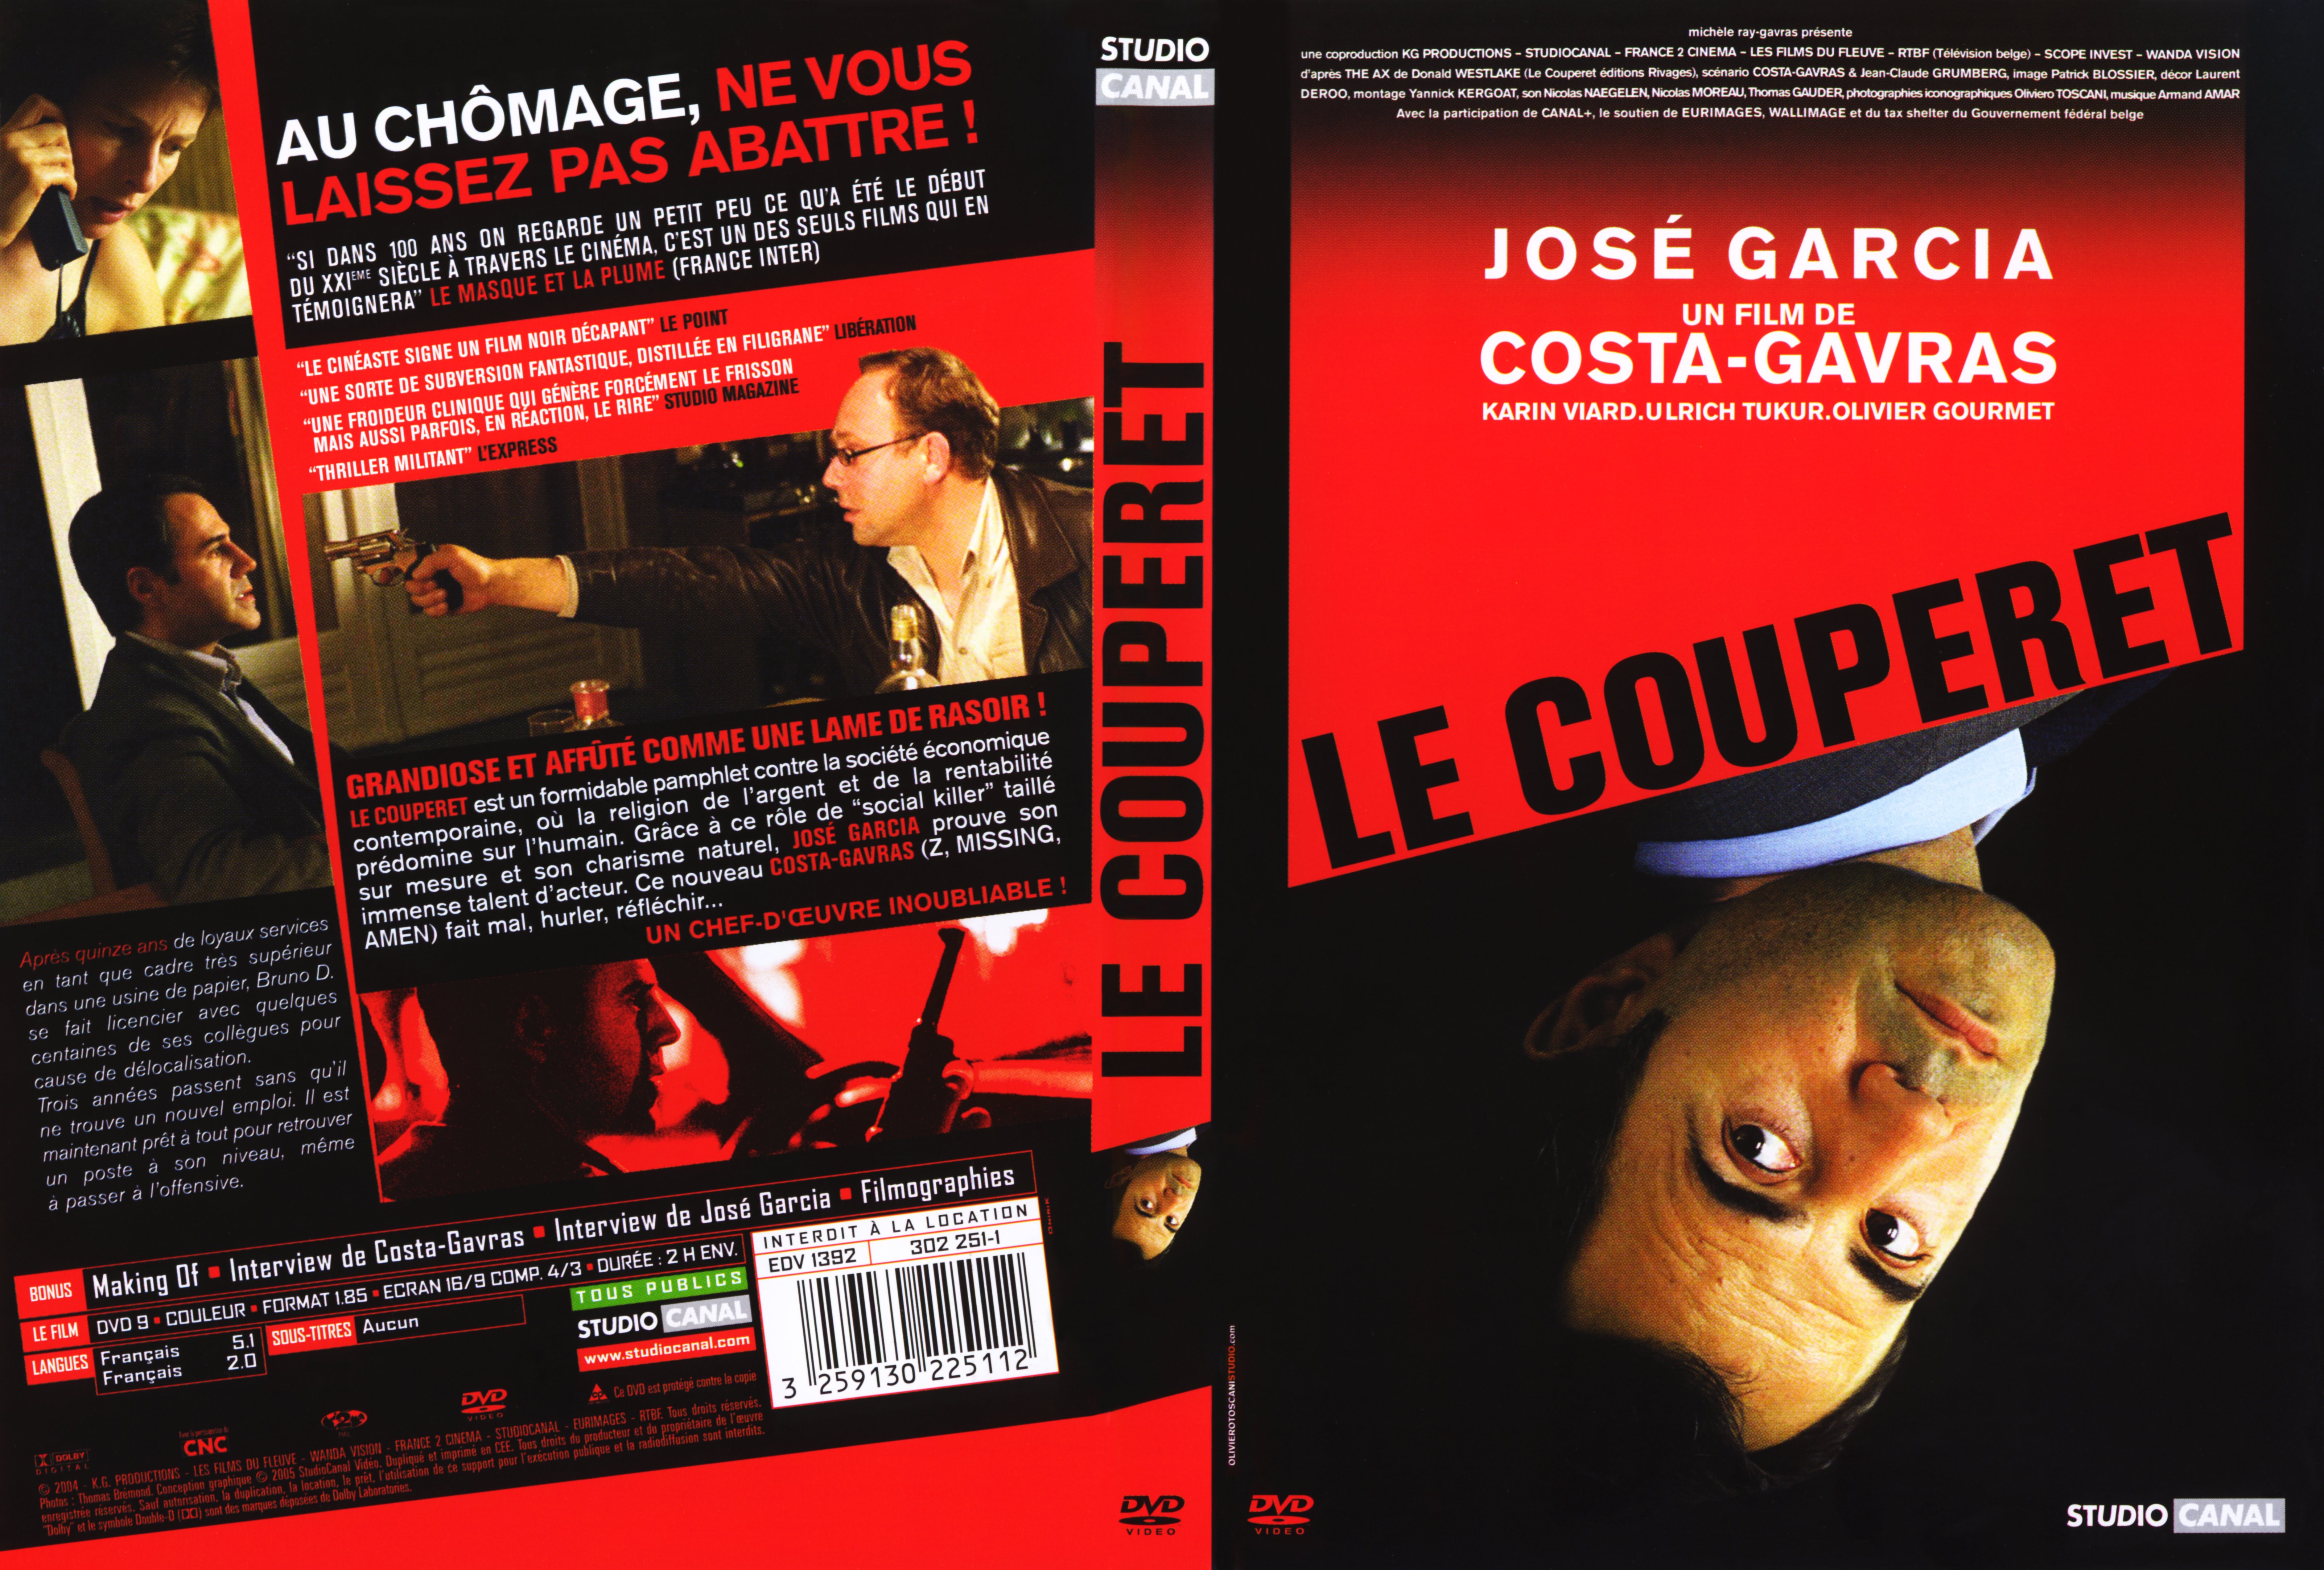 Jaquette DVD Le couperet